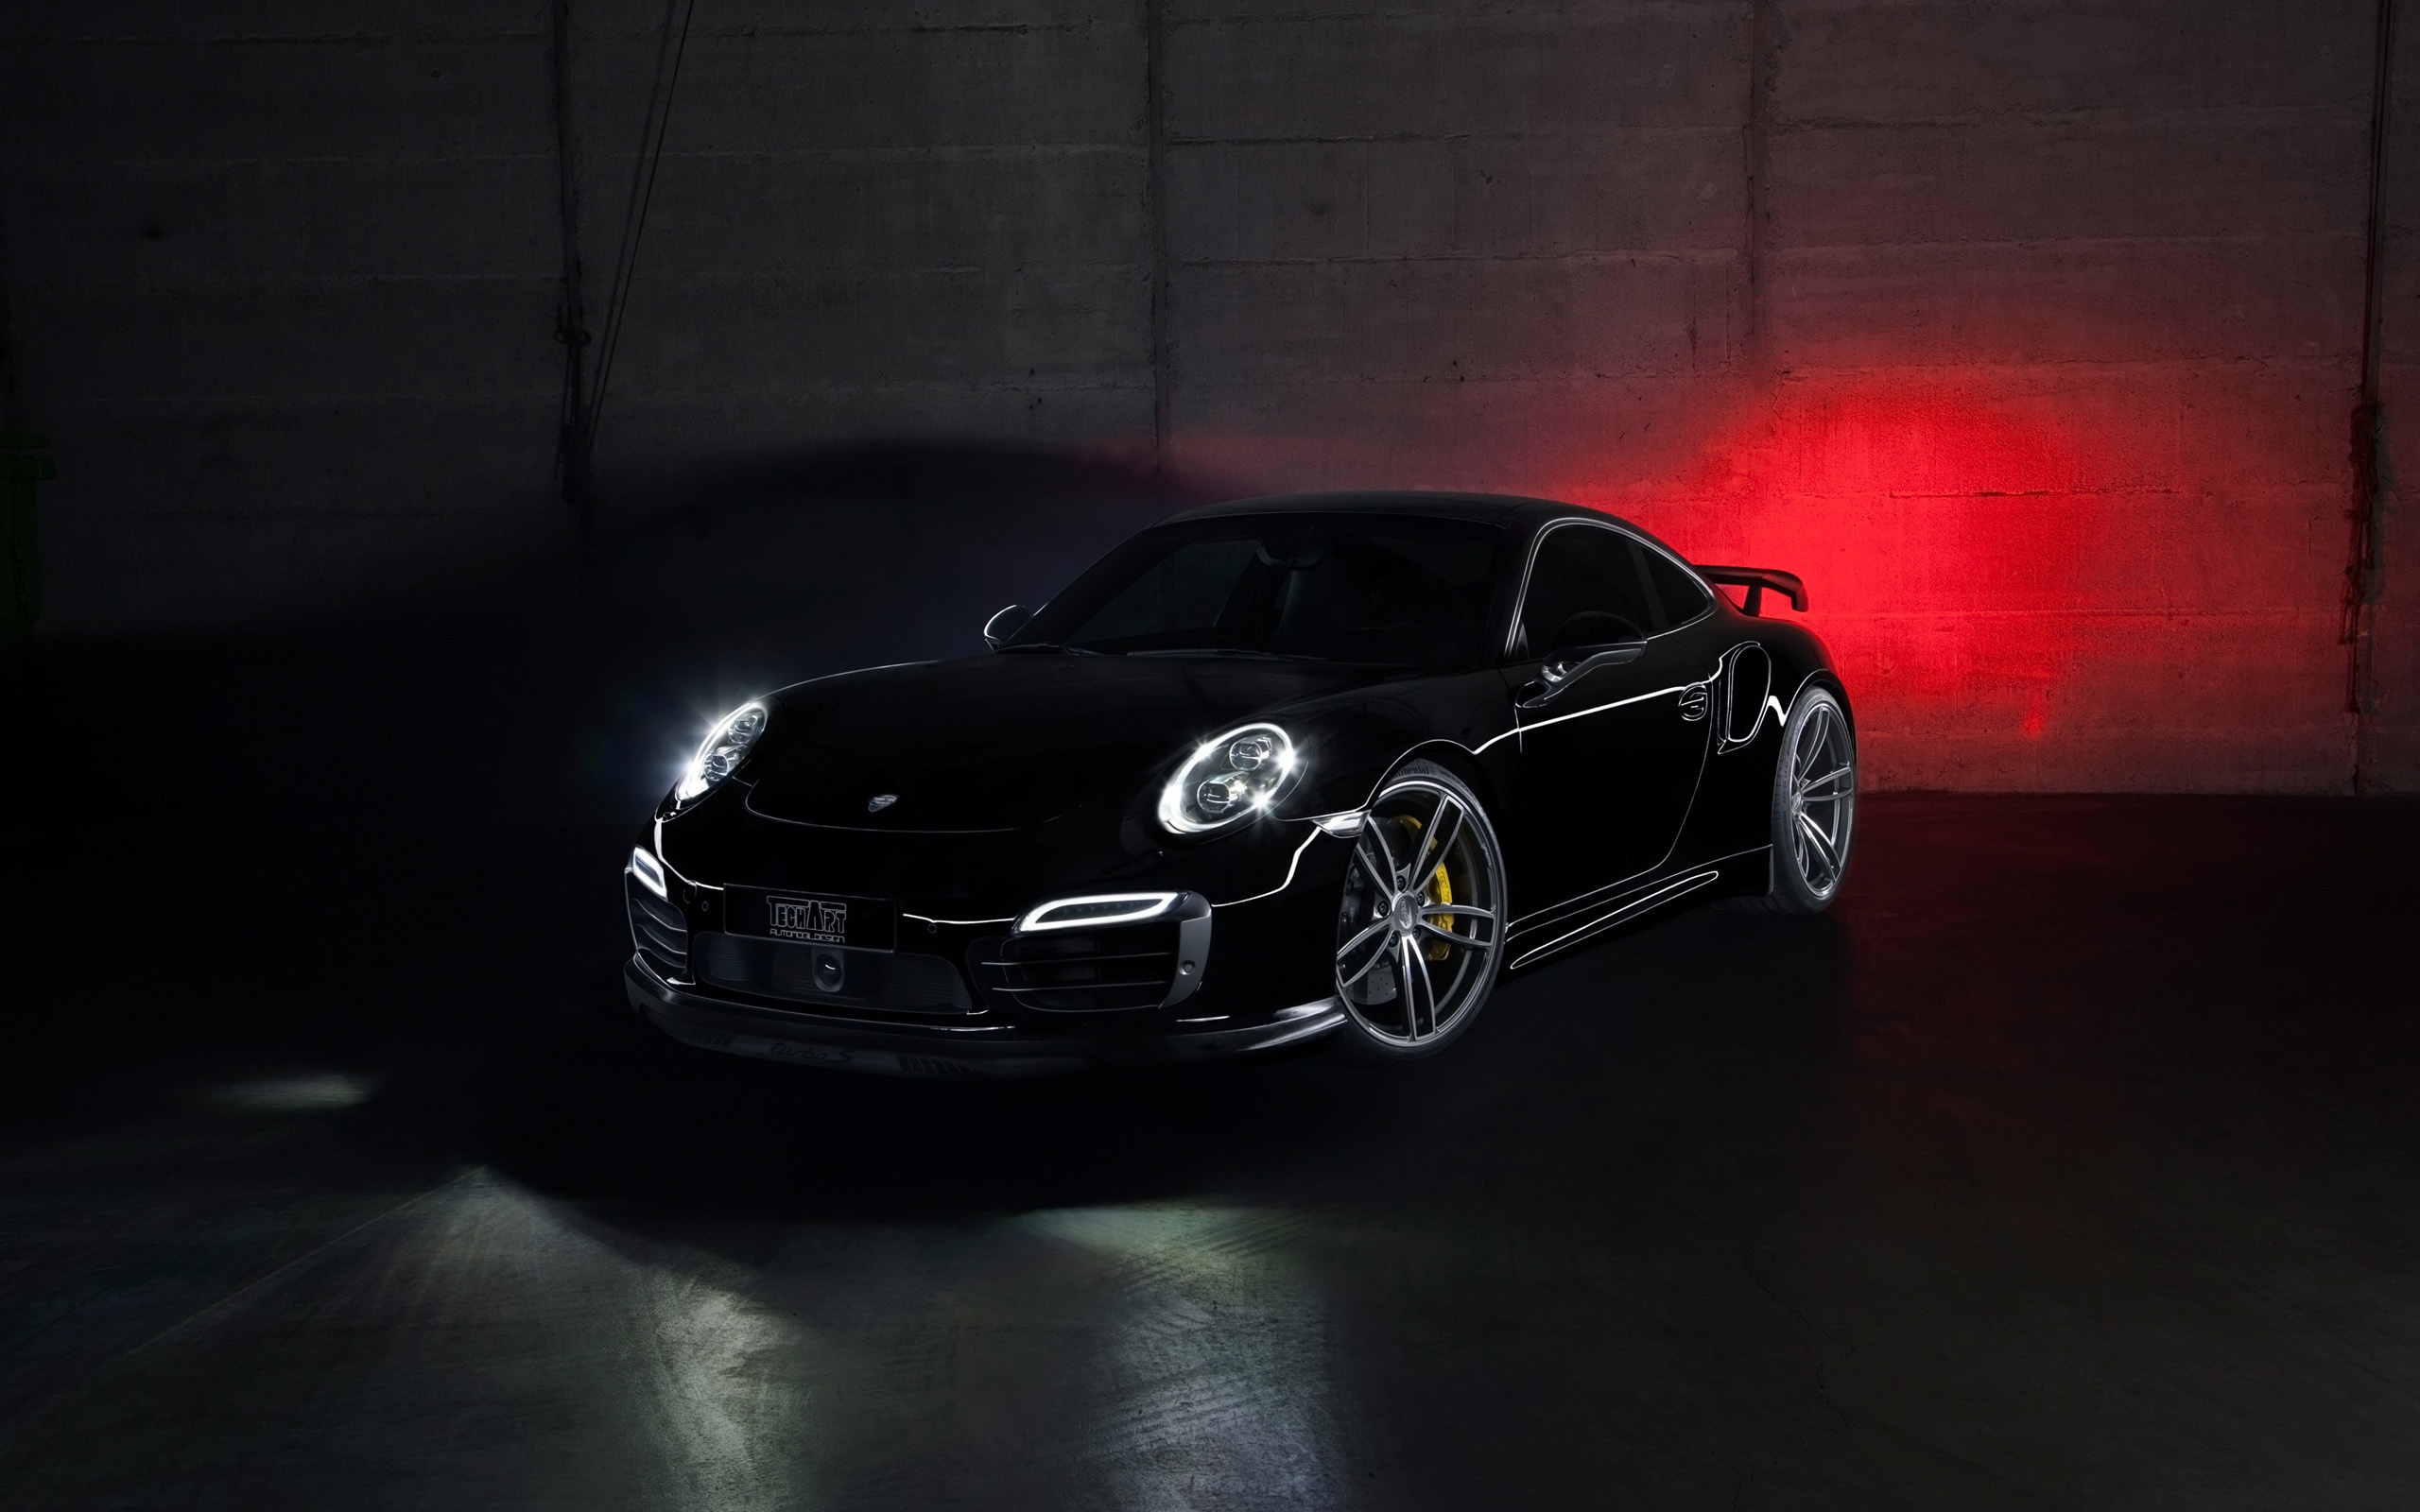 Bộ sưu tập hình nền TechArt Porsche 911 Turbo với chất lượng hình ảnh sắc nét và tuyệt đẹp. Hình ảnh liên quan sẽ thu hút bạn với thiết kế hiện đại, màu sắc ấn tượng và góc nhìn độc đáo, giúp bạn tối ưu hóa trải nghiệm màn hình của mình.